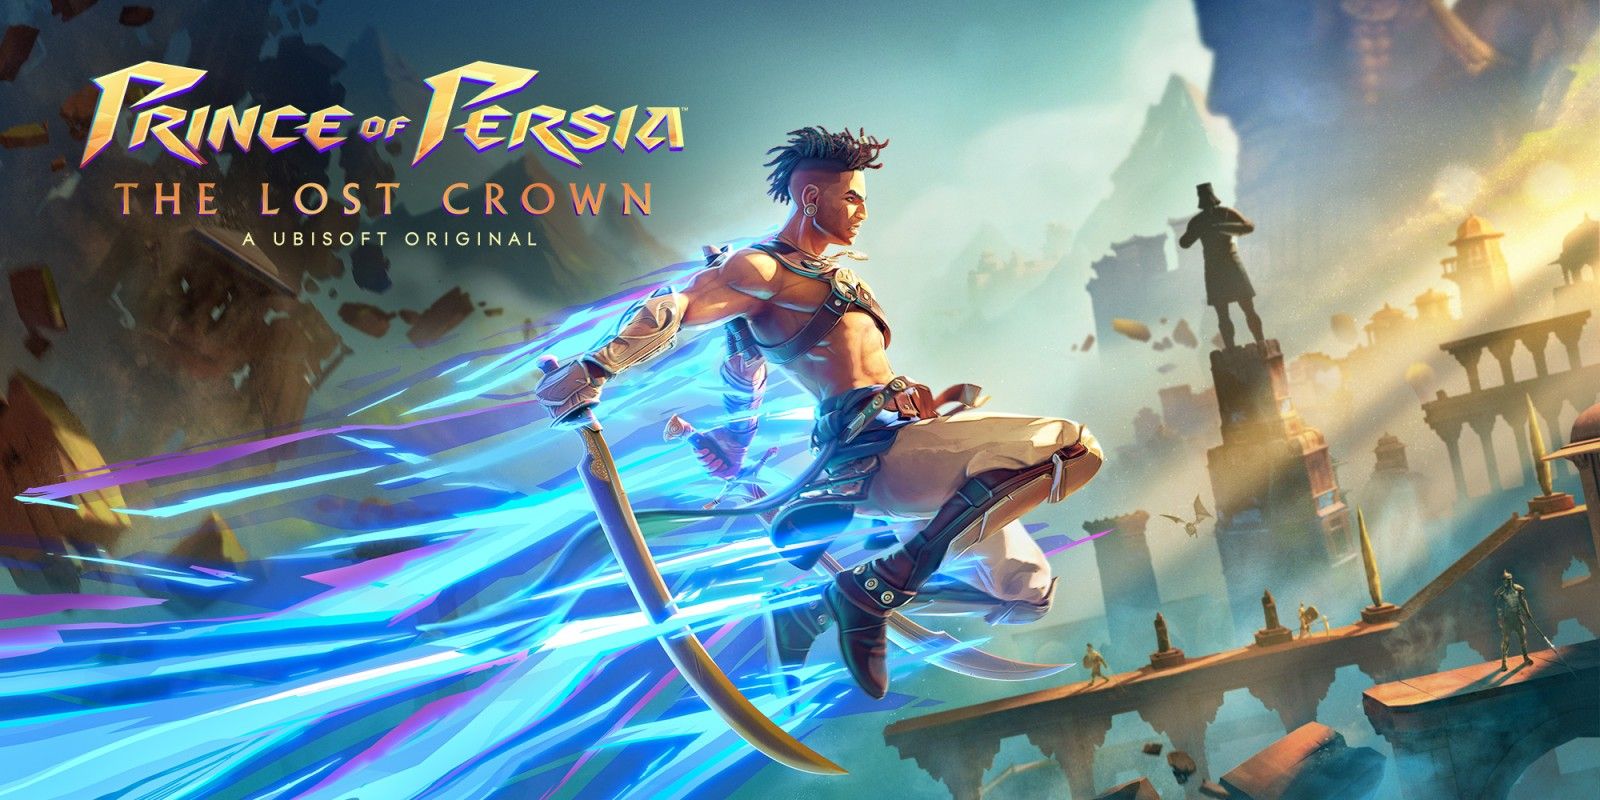 育碧横版动作游戏《波斯王子: 失落的王冠》将带来故事DLC和新模式